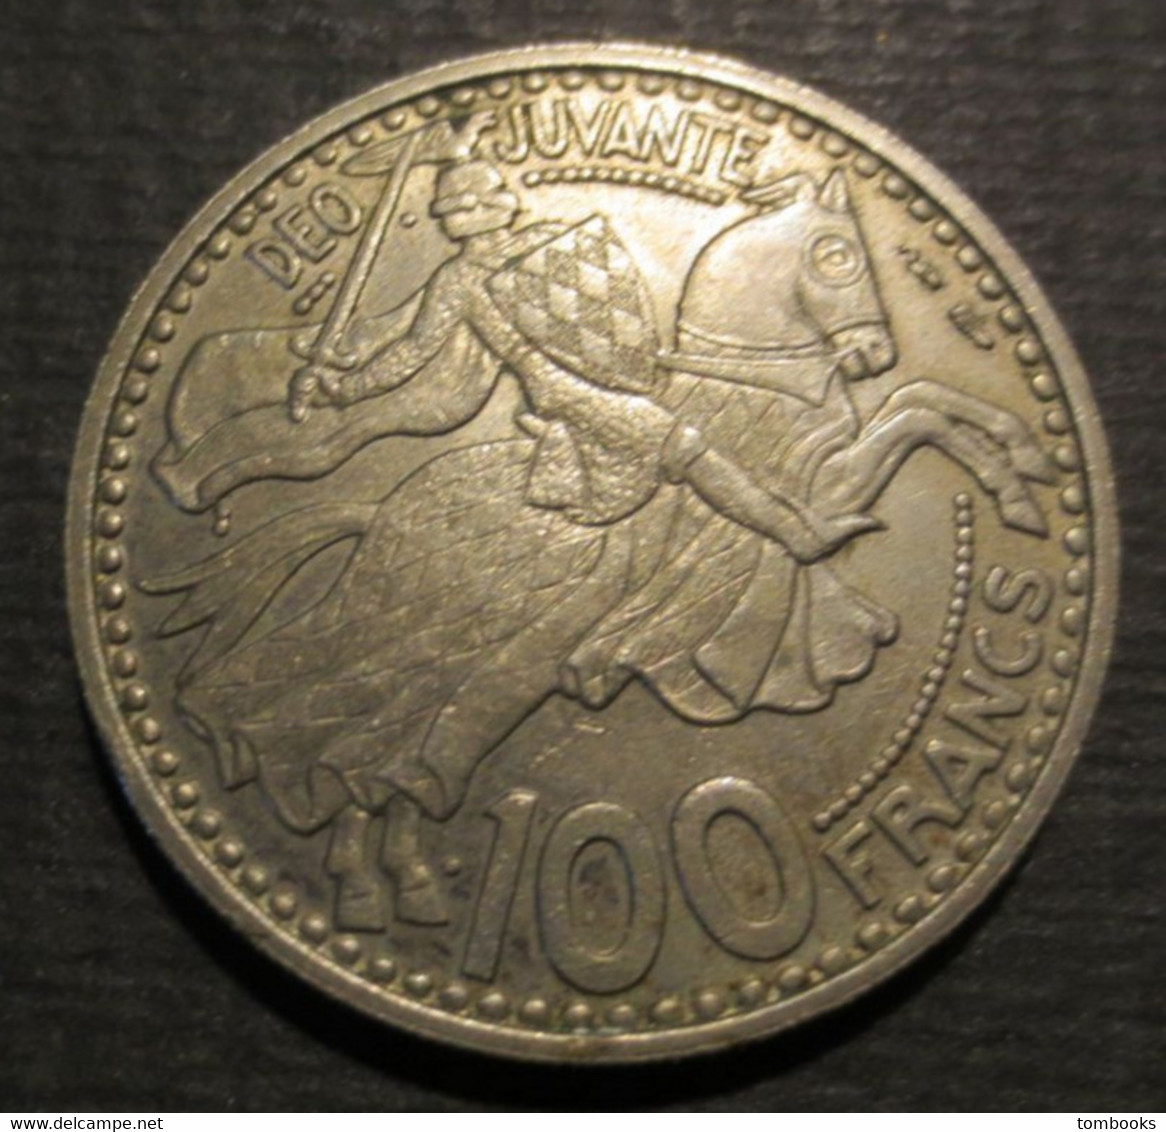 Monaco - Monnaie Ancienne - 100 Francs - Copper Nickel - Rainier III - Prince De Monaco - 1950 - - 1949-1956 Alte Francs